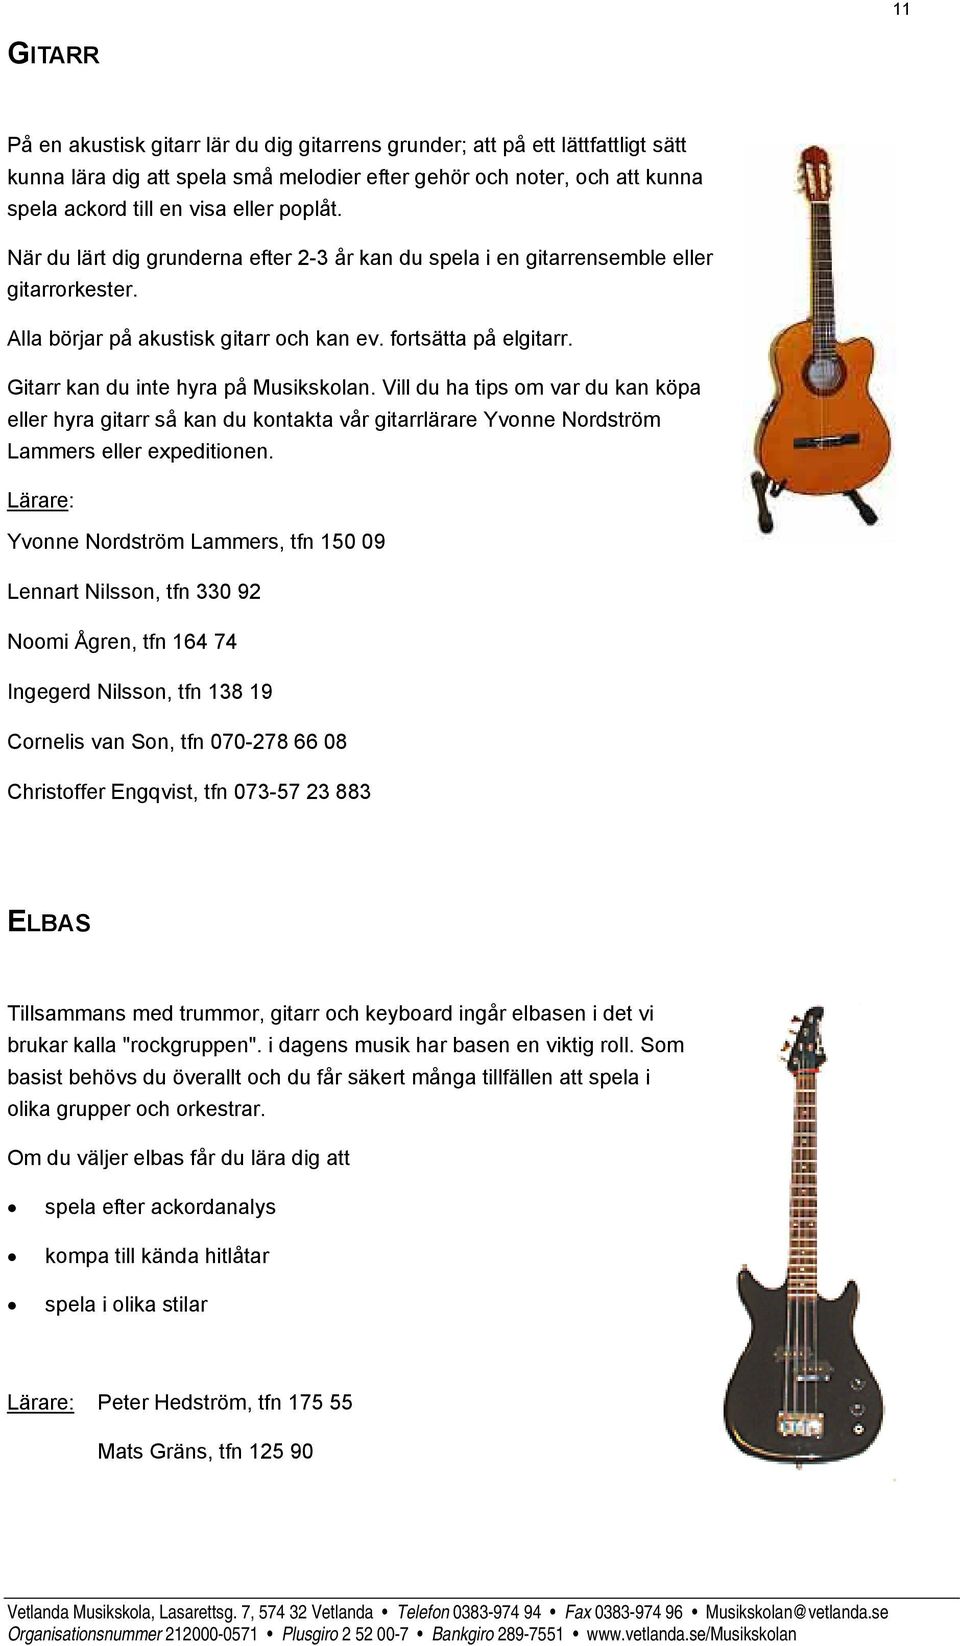 Gitarr kan du inte hyra på Musikskolan. Vill du ha tips om var du kan köpa eller hyra gitarr så kan du kontakta vår gitarrlärare Yvonne Nordström Lammers eller expeditionen.